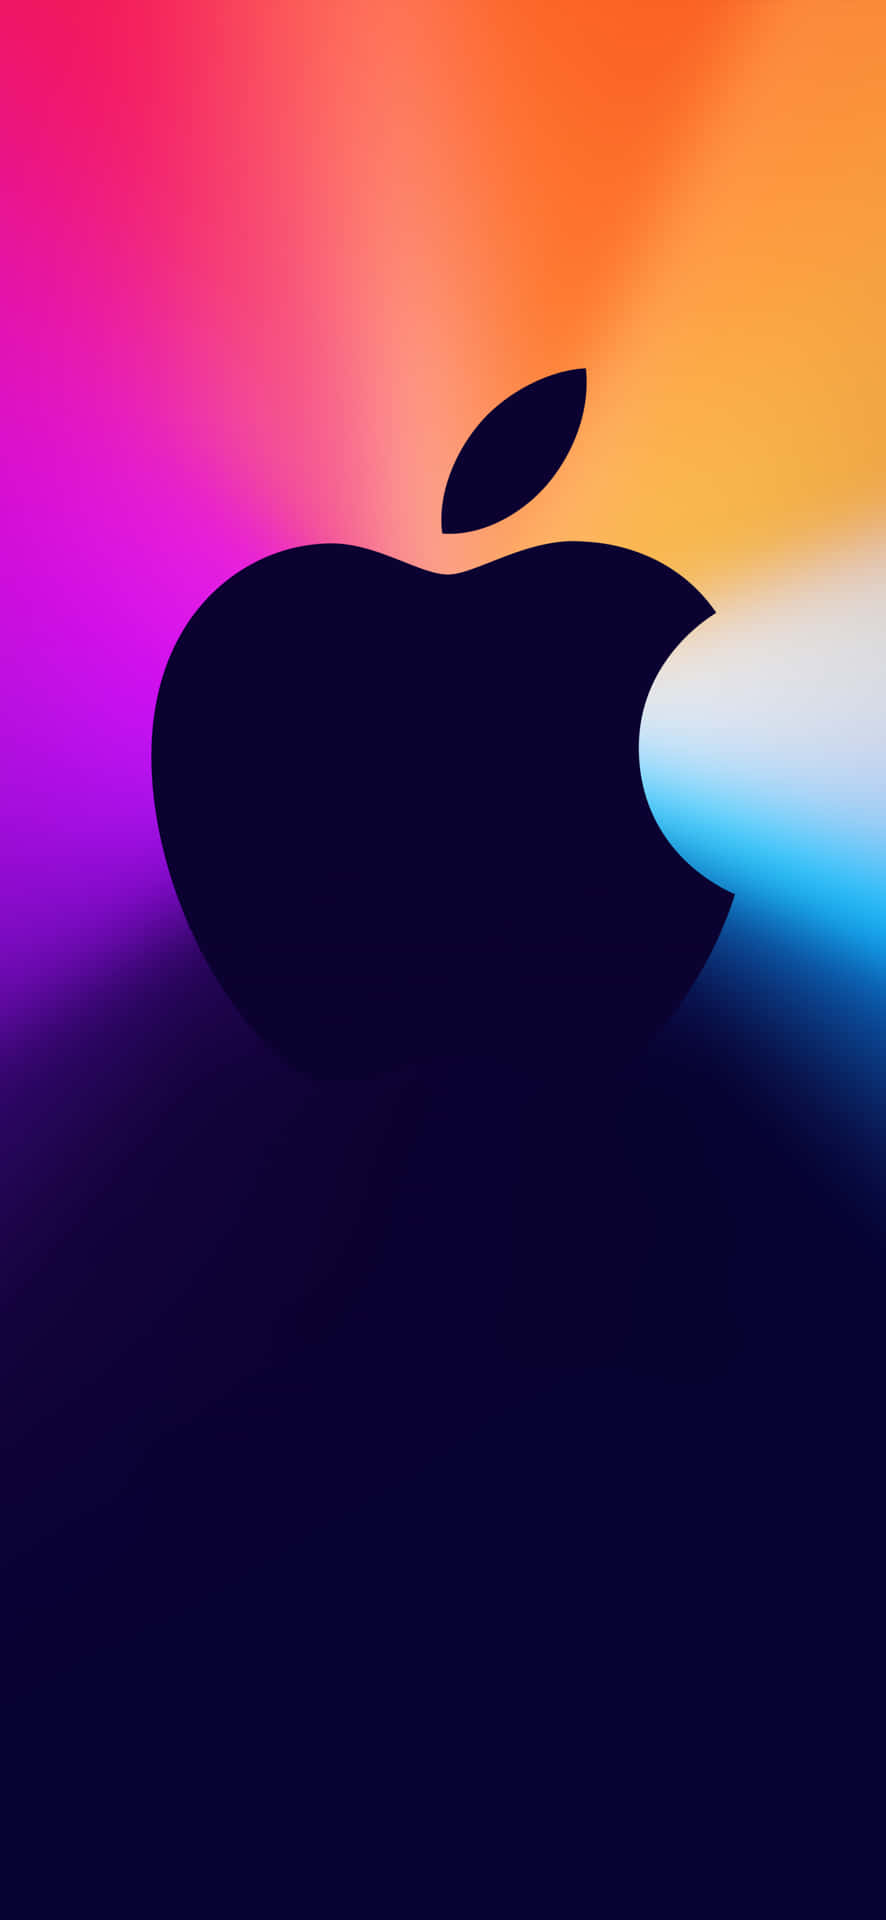 Sfondocon Logo Apple In Pixel 3 Di Colore Blu Scuro.